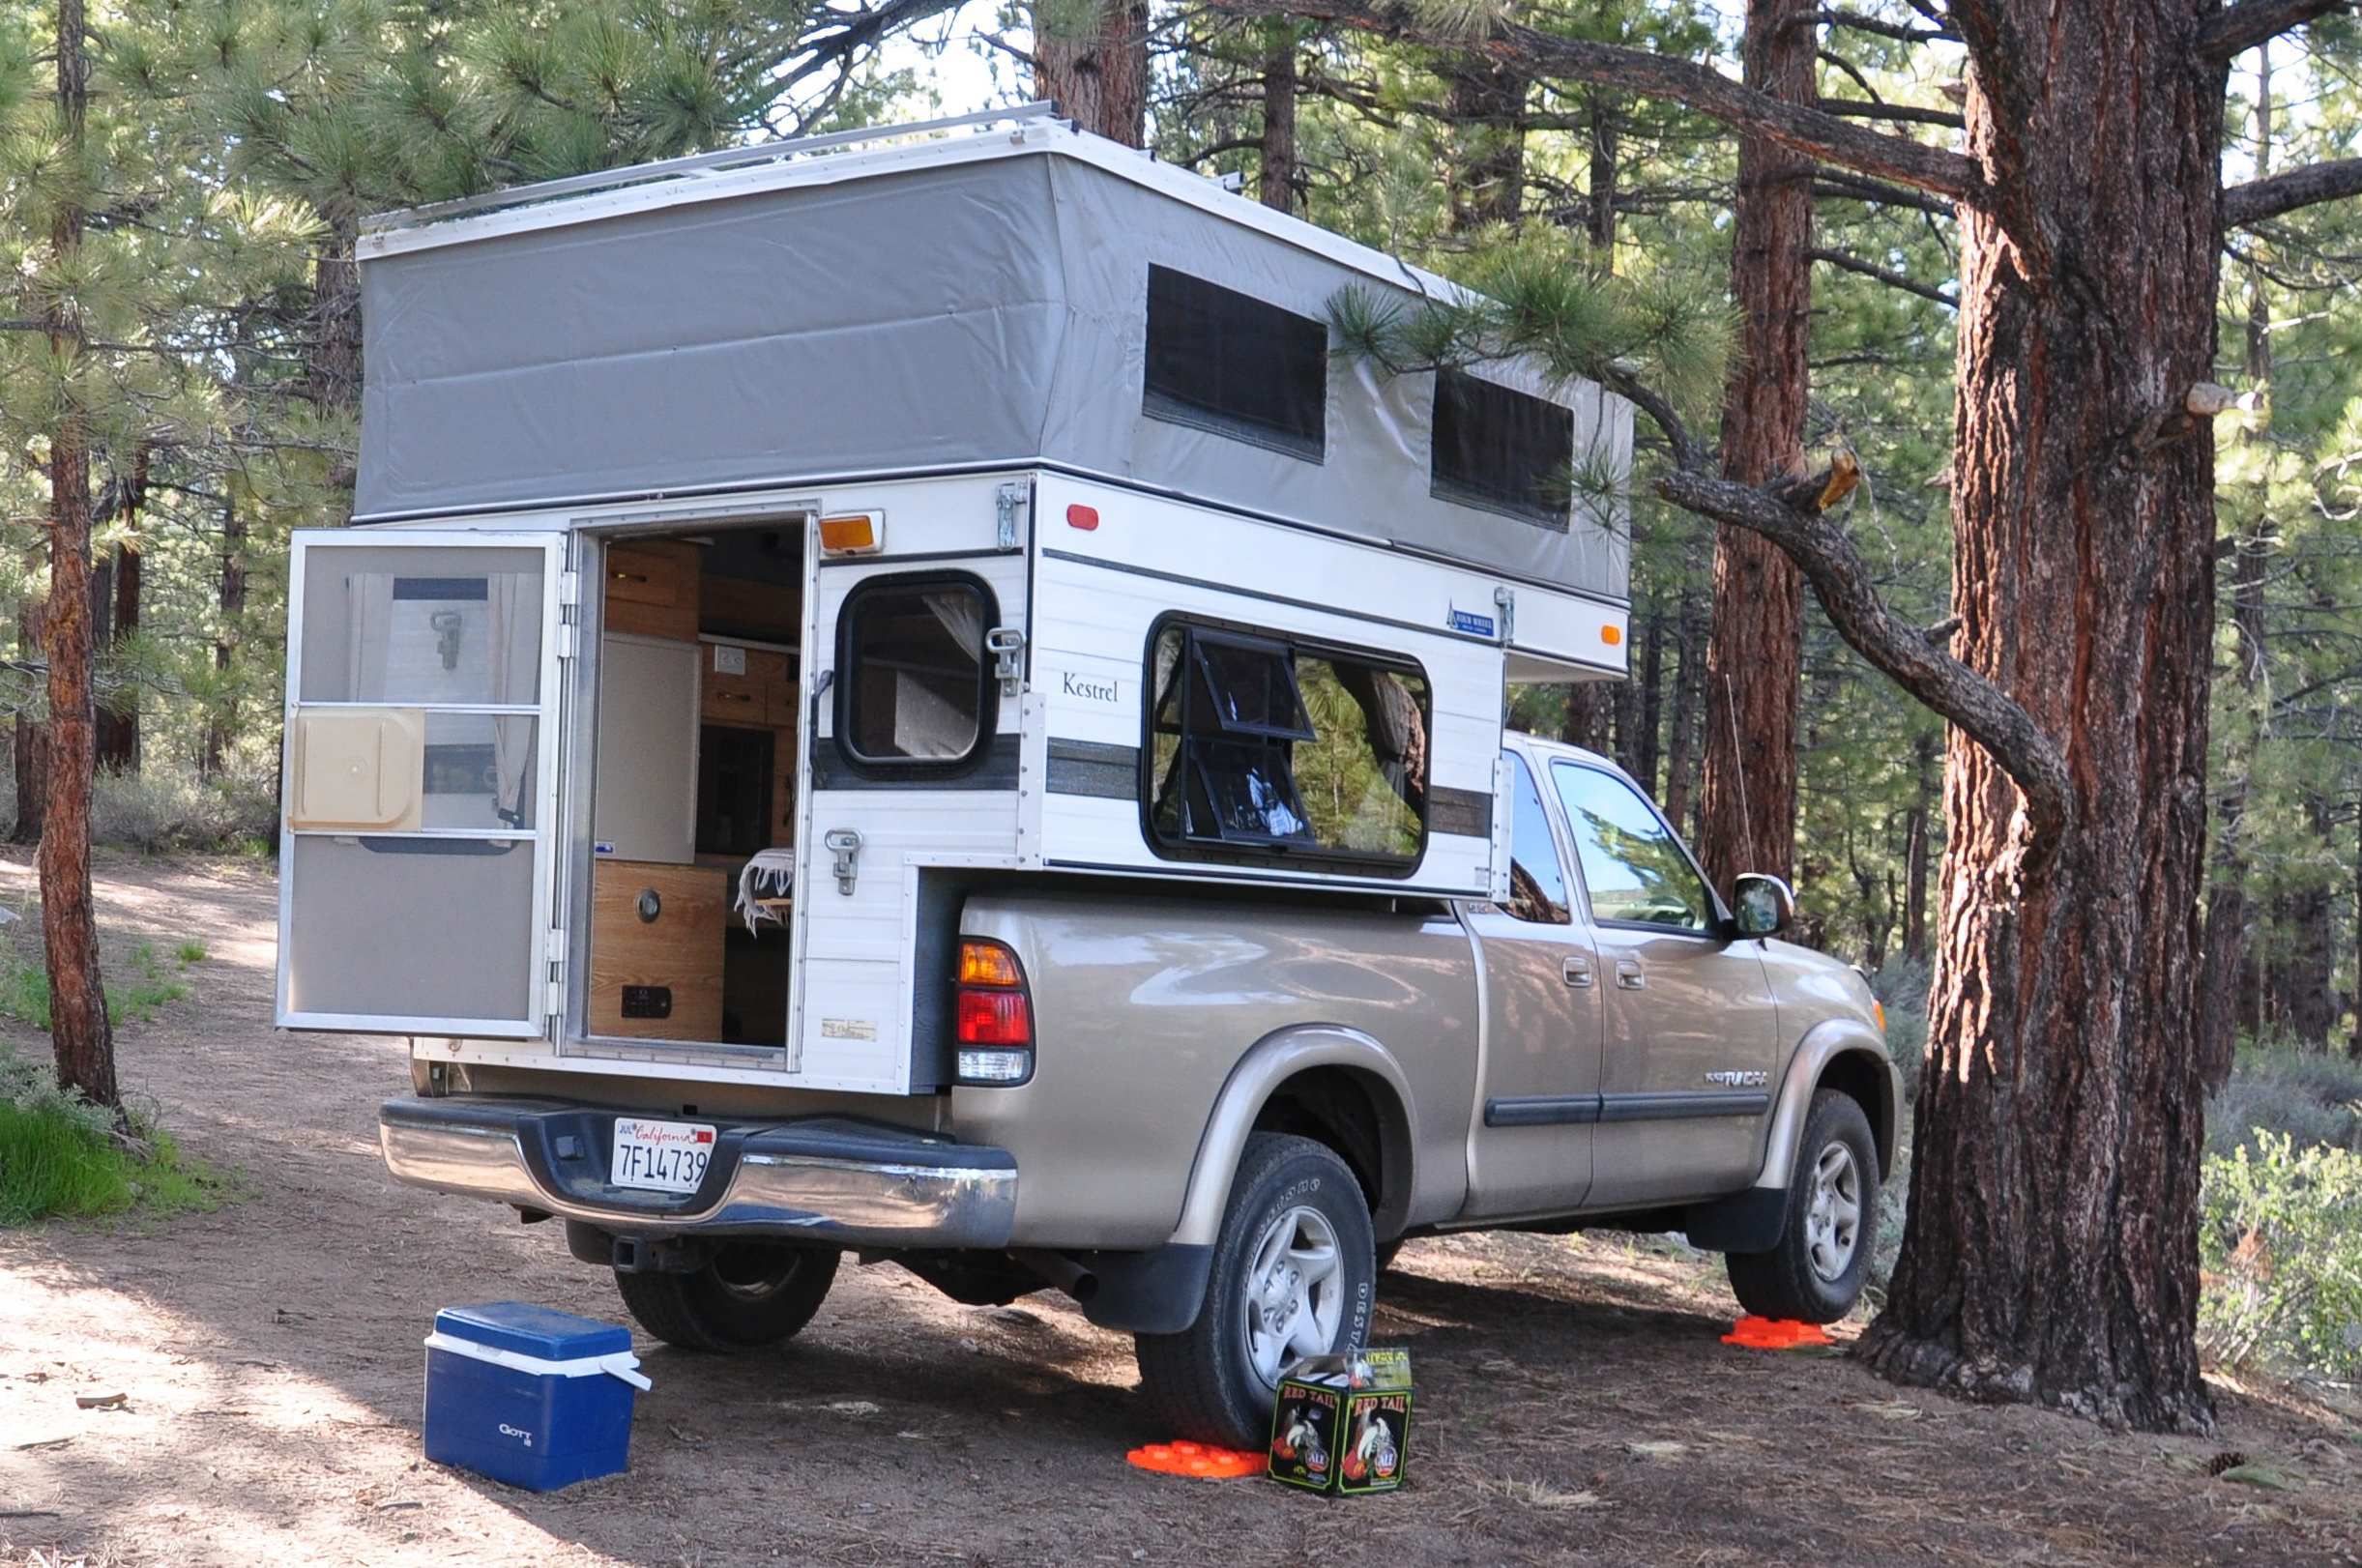 Four Wheel Camper Review: Hawk or Kestrel Model Camper That Goes On Back Of Truck